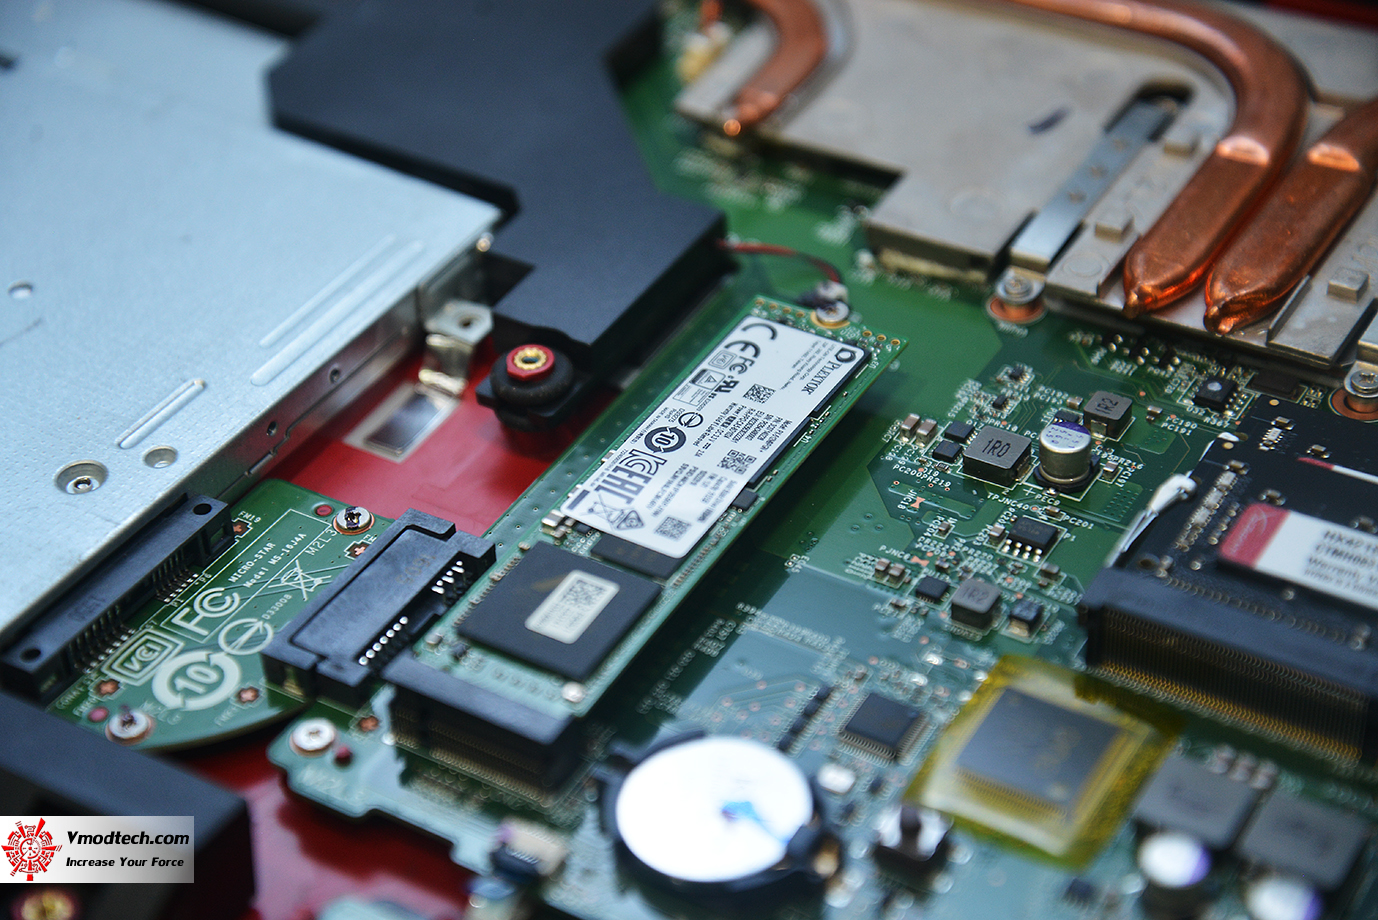 dsc 7628 Upgrade old laptop from HDD to SSD and Memory อัพเกรดแล็ปท็อปรุ่นเก่าให้เร็วแรงขึ้นกว่าเดิมด้วย SSD และ แรม